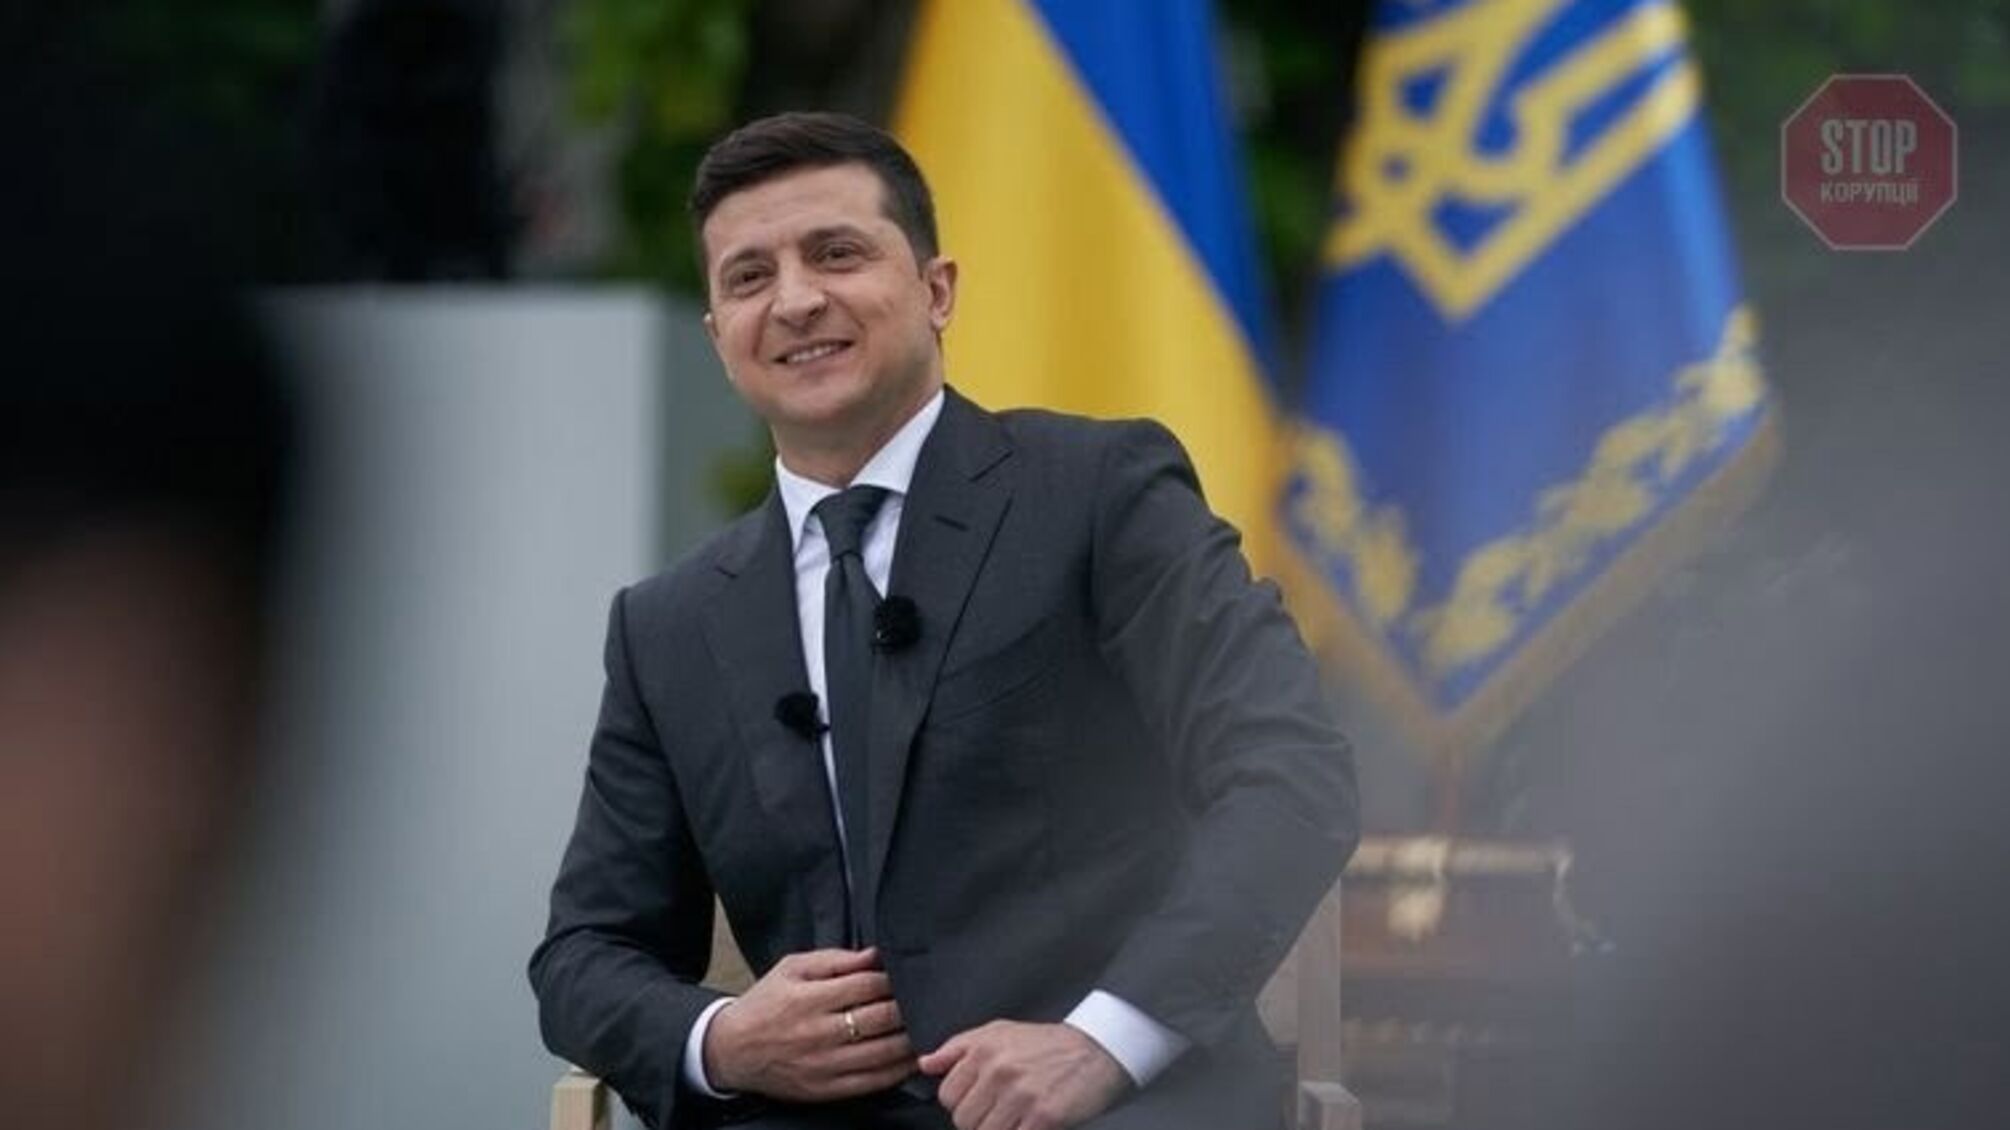 Я захищаю Україну, — Зеленський про засідання РНБО 